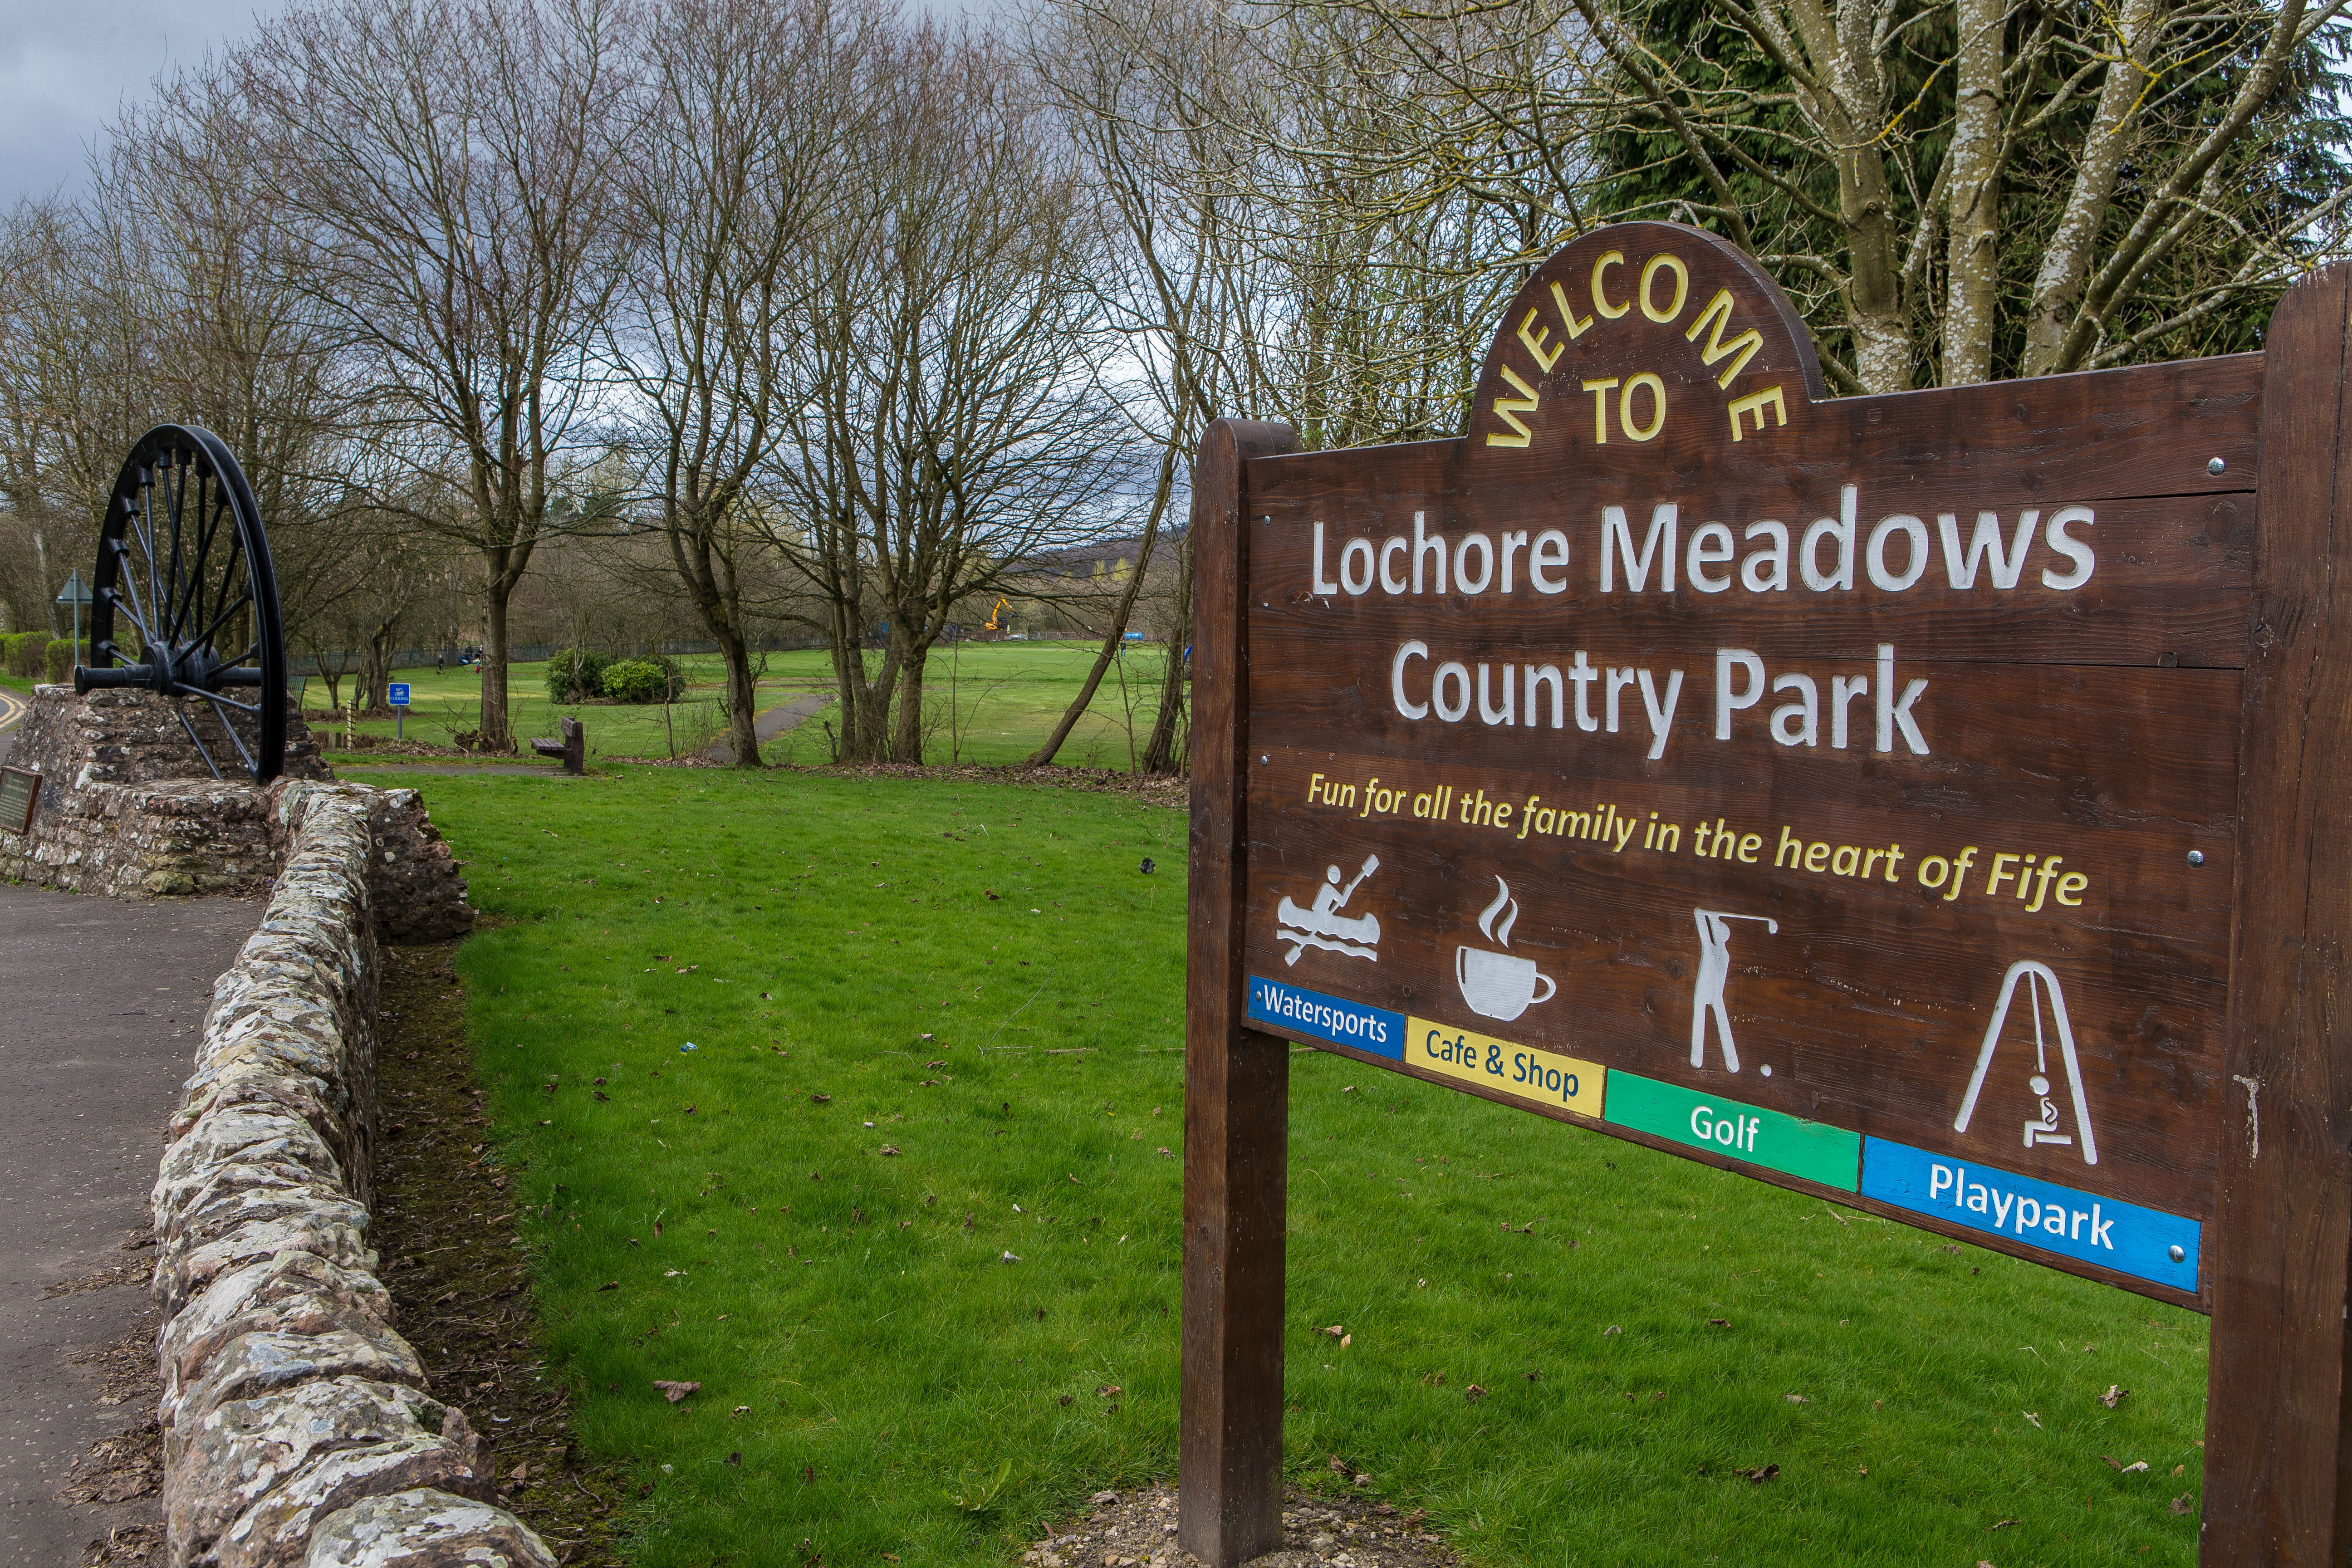 Lochore Meadows Country Park.